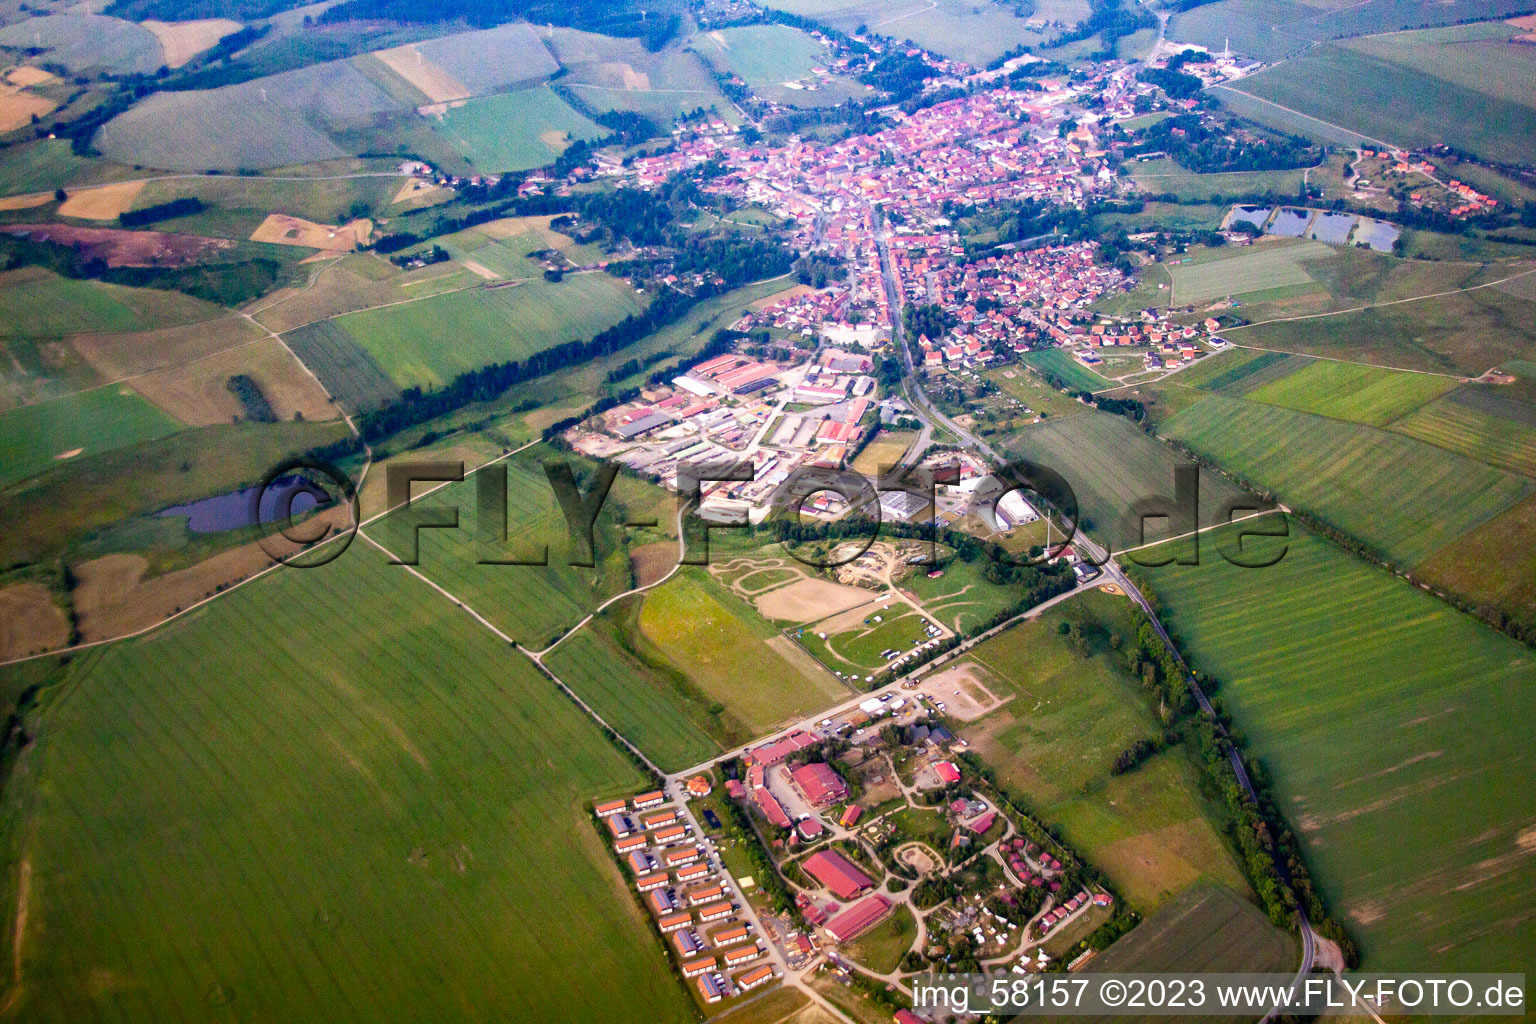 Vue aérienne de Quartier Hasselfelde in Oberharz am Brocken dans le département Saxe-Anhalt, Allemagne